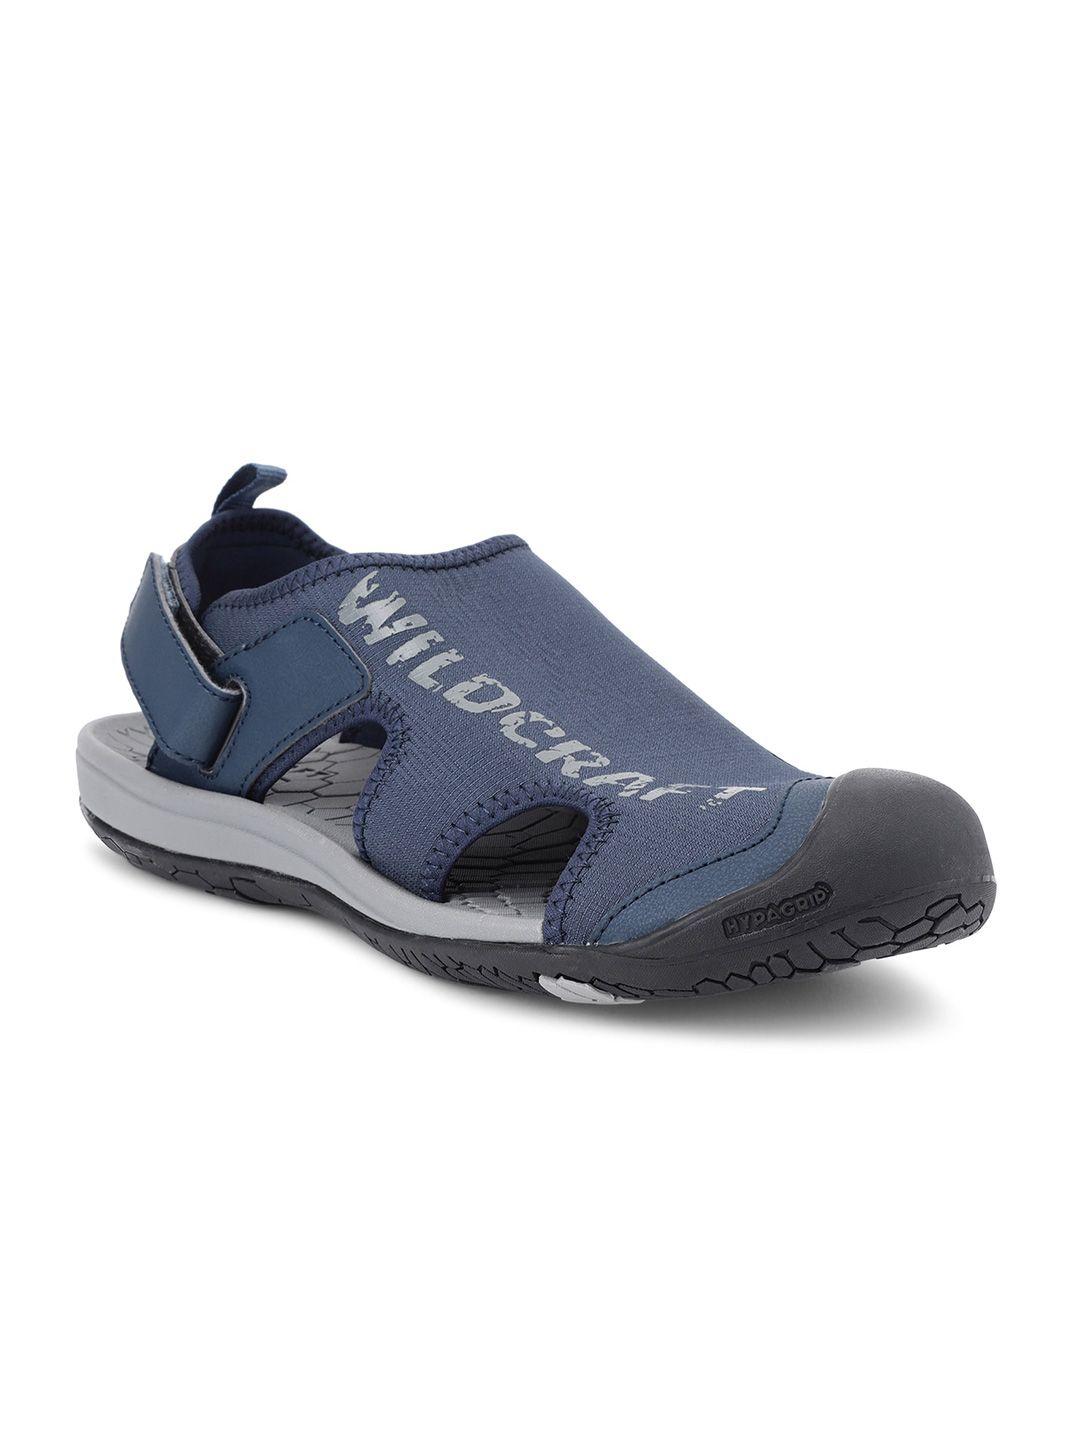 Wildcraft Men Navy Blue & Grey PU Comfort Sandals